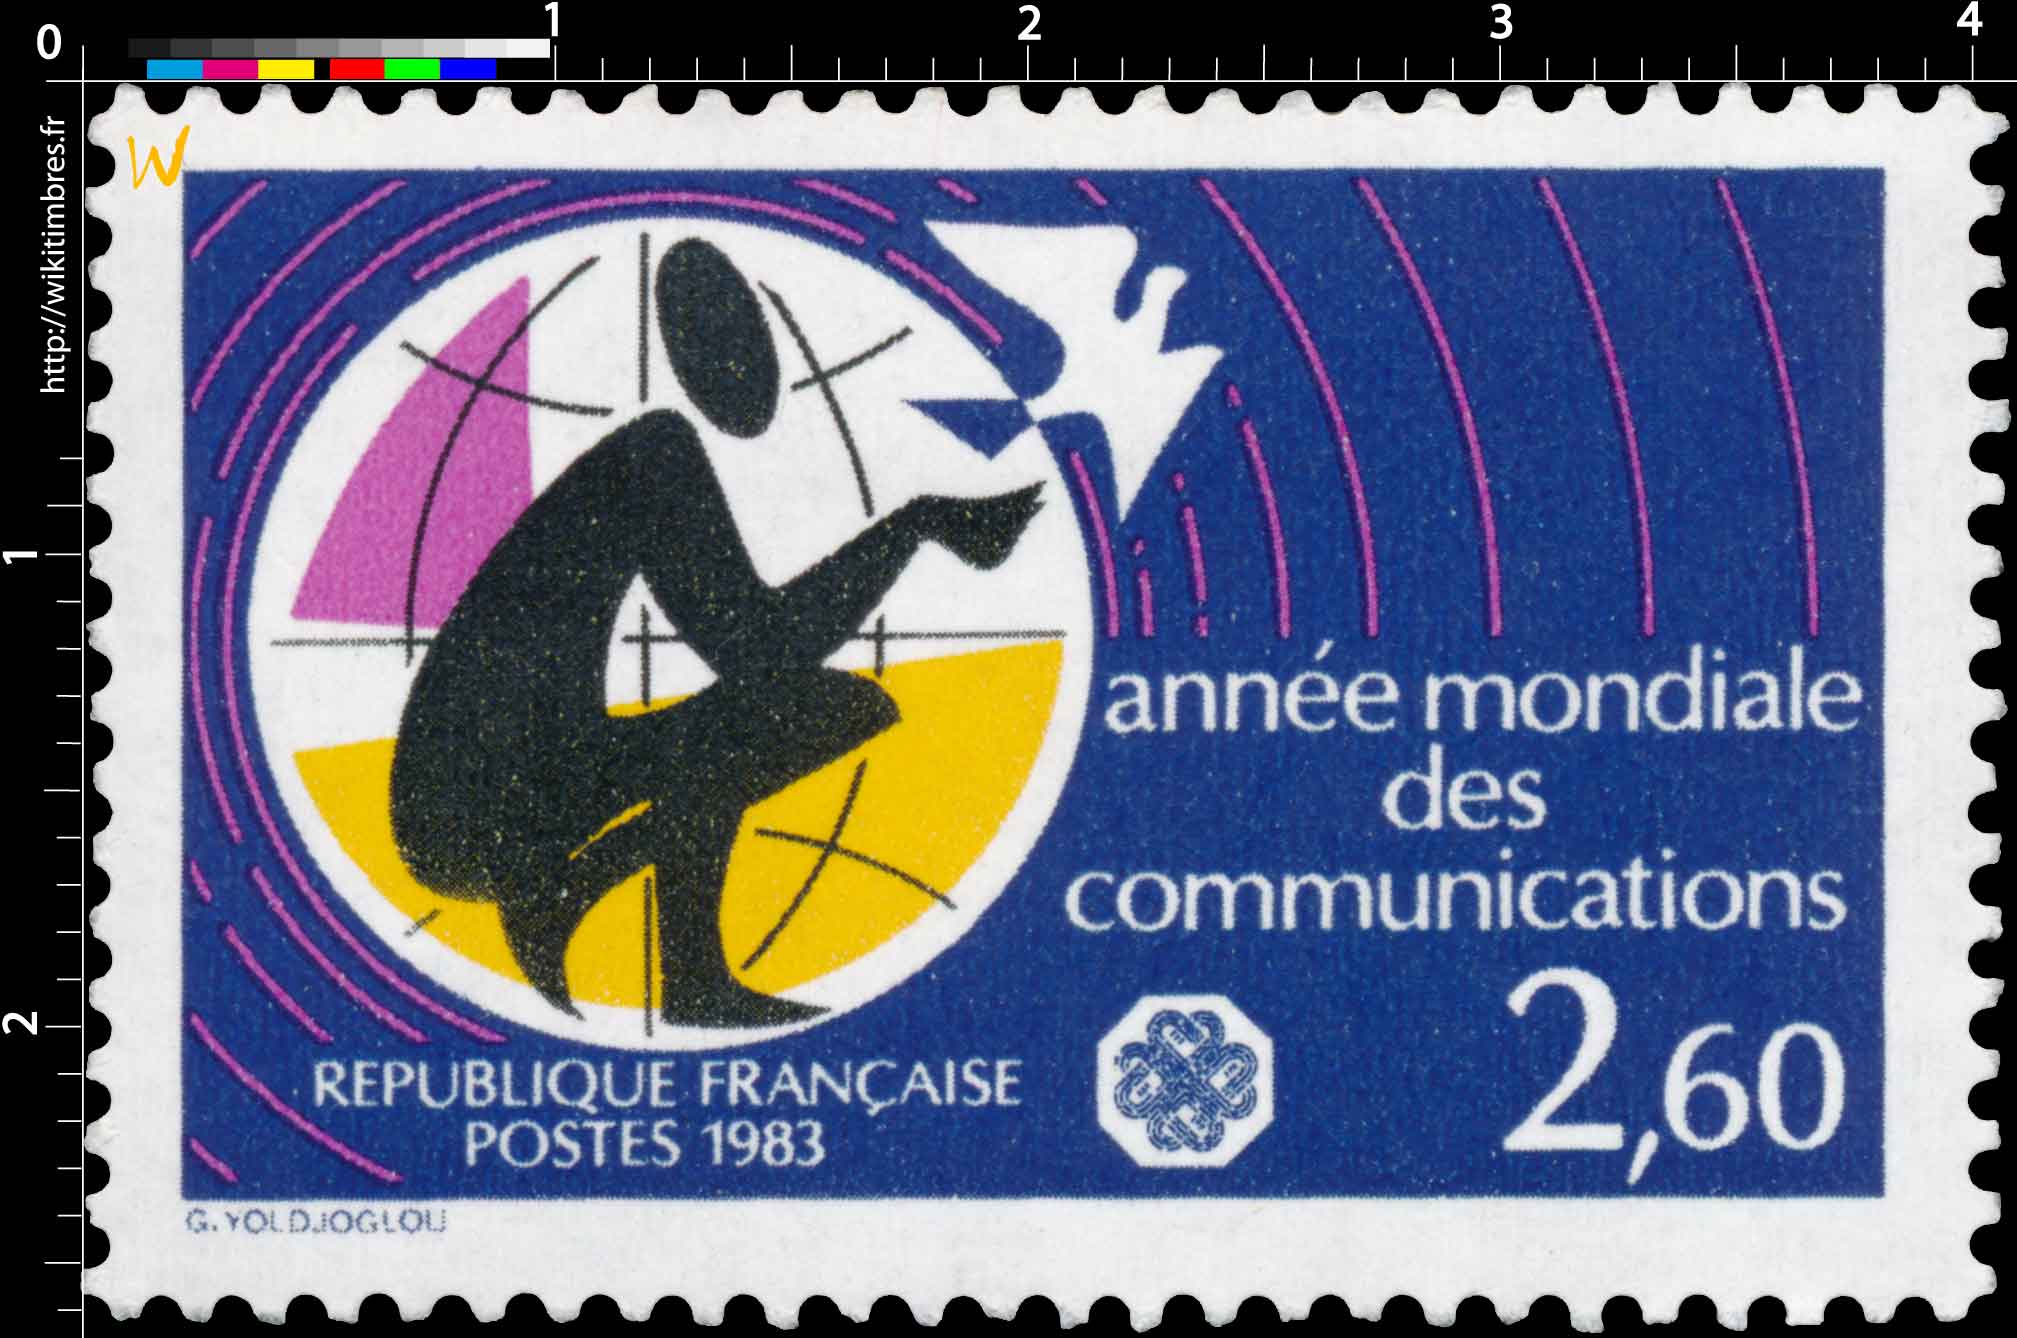 1983 année mondiale des communications